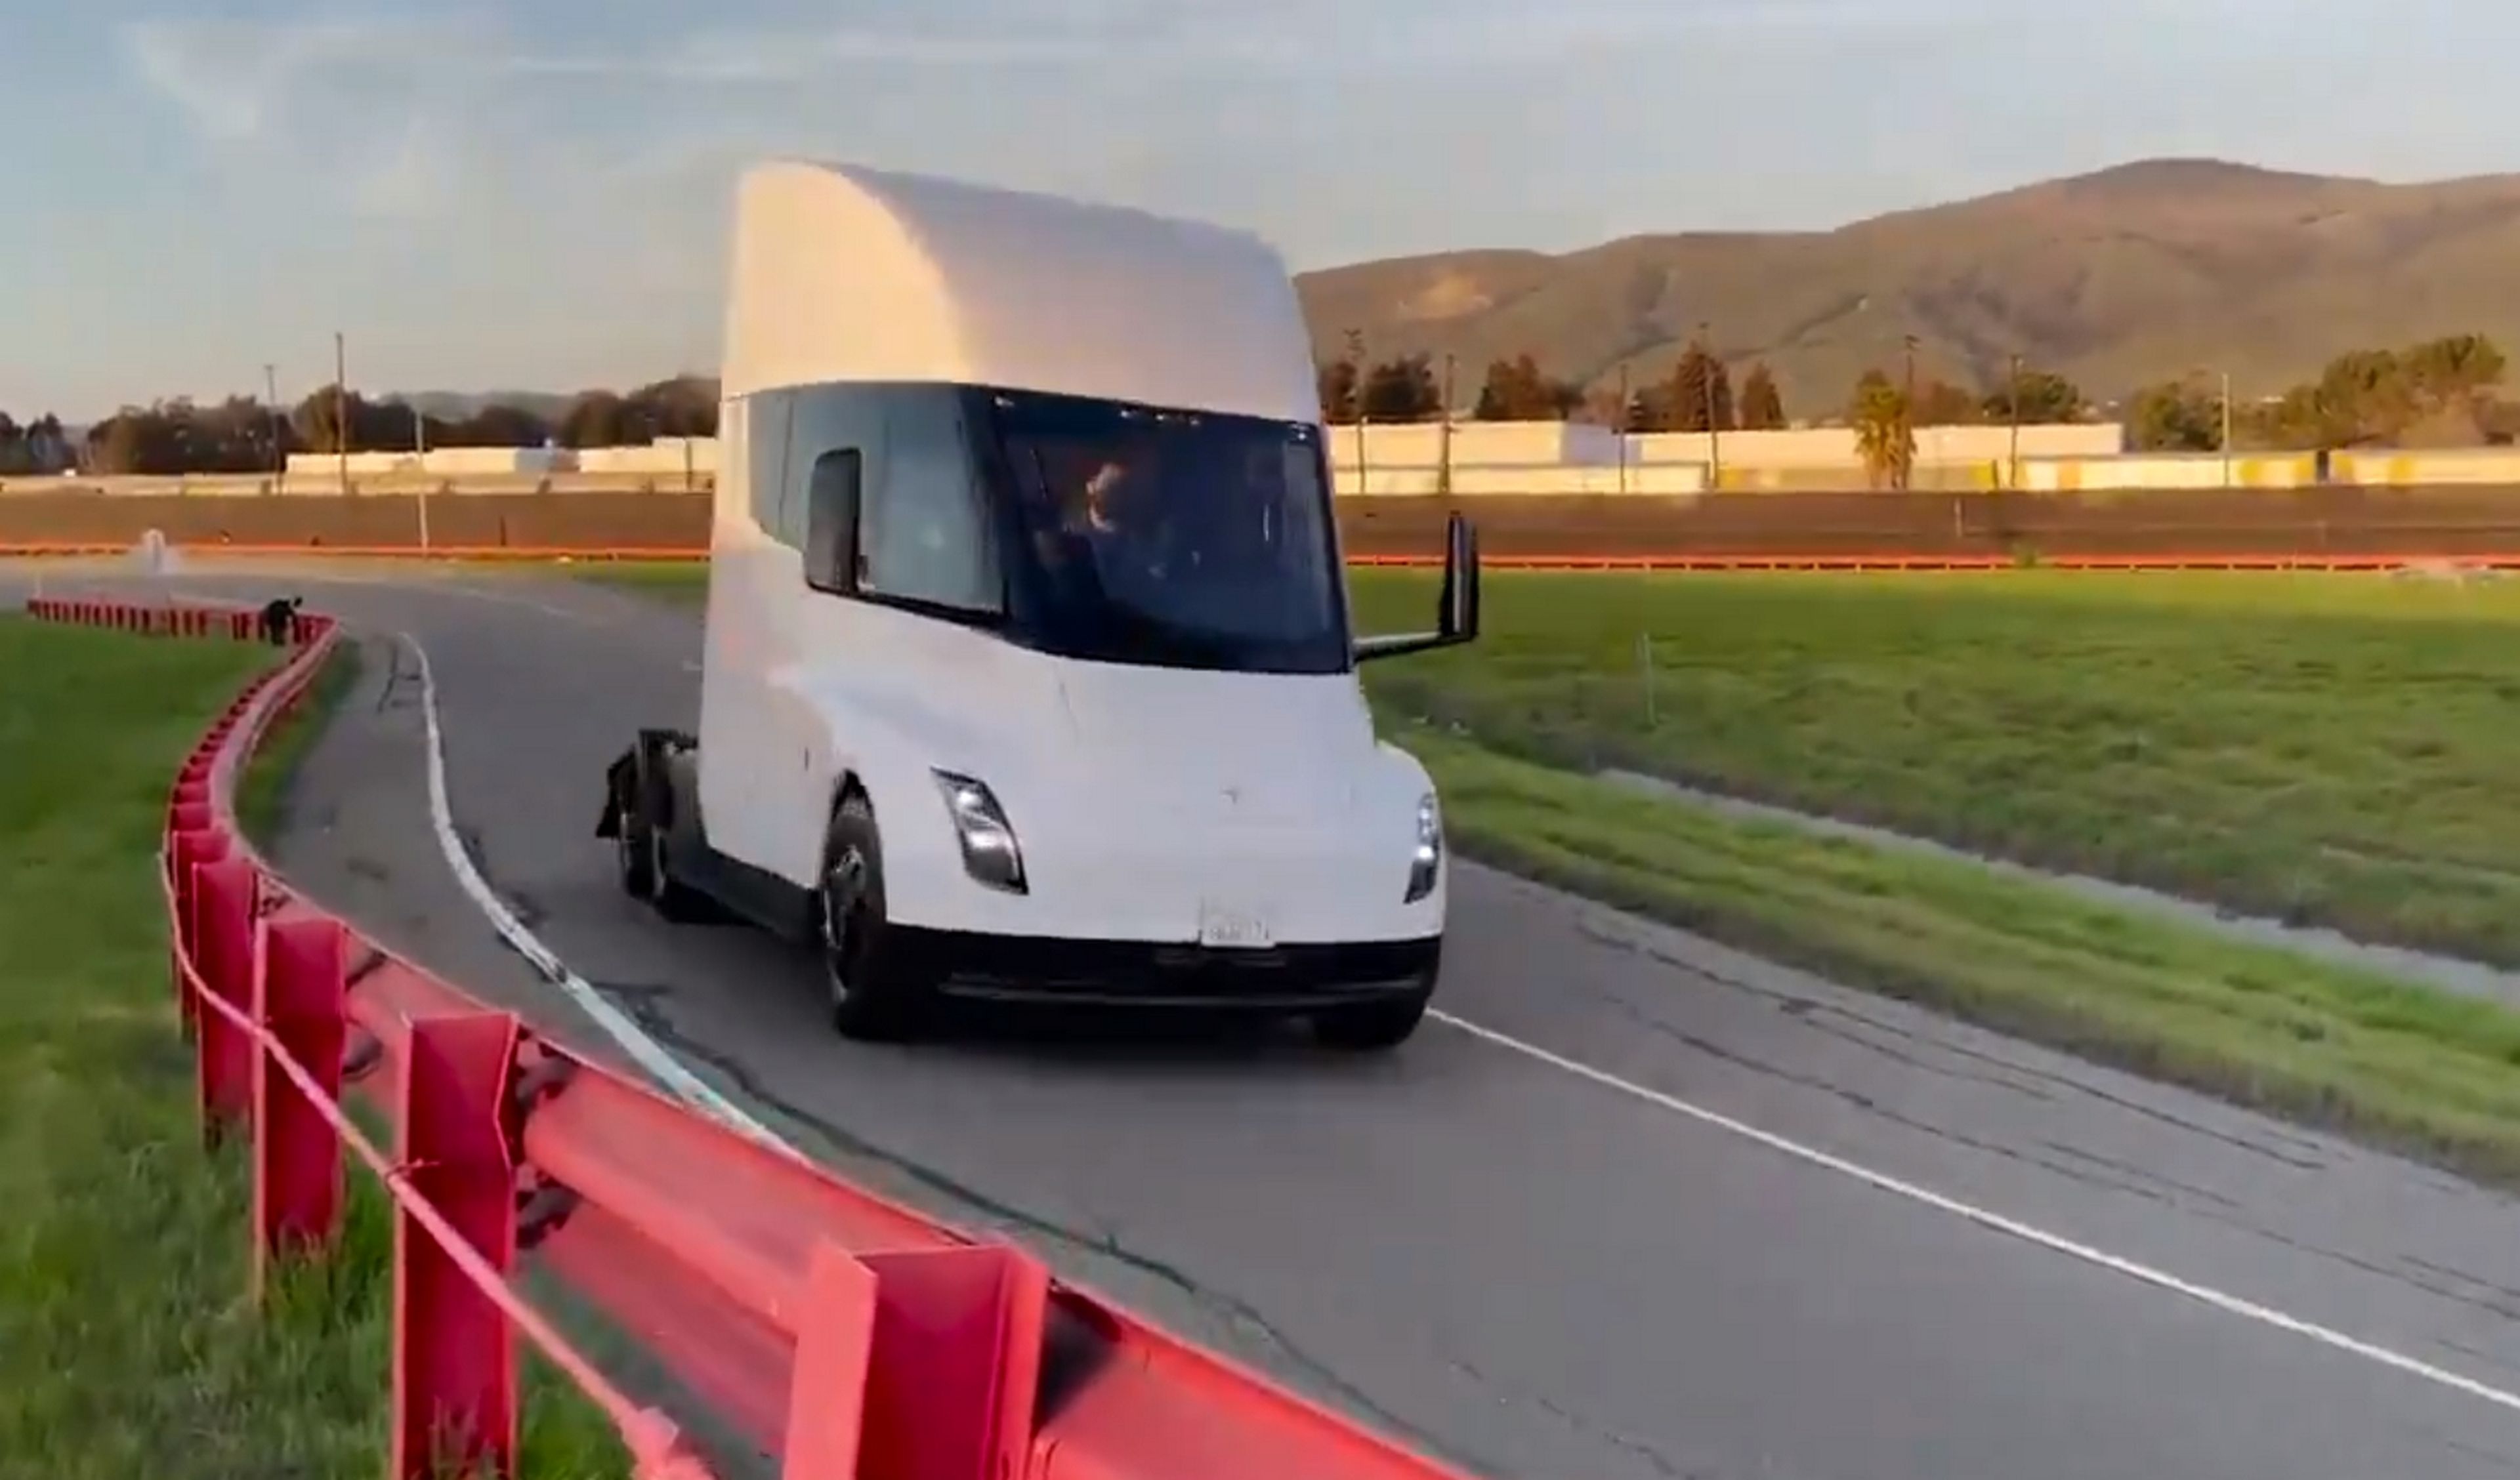 El camión eléctrico Semi de Tesla ya rueda en circuito, y suena como un Tie Fighter de Star Wars